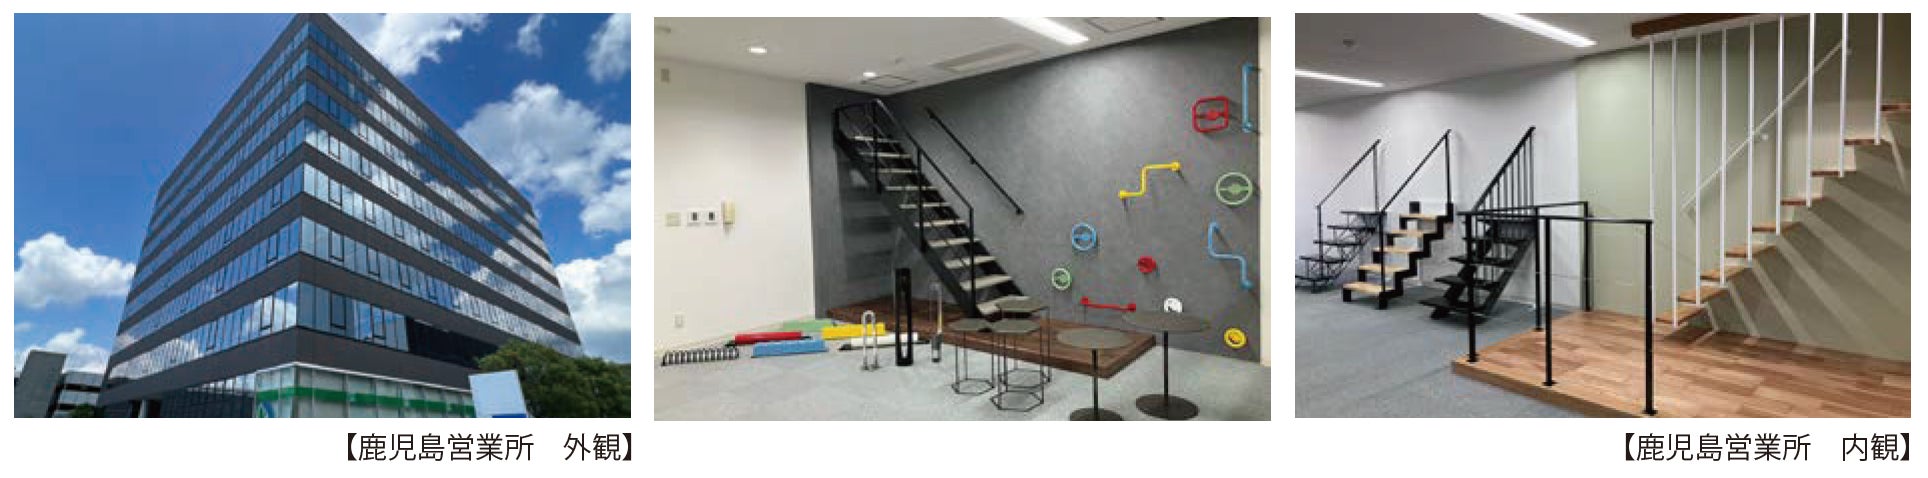 シースルー階段の営業所を13 拠点に拡大し、九州エリア強化へのサブ画像2